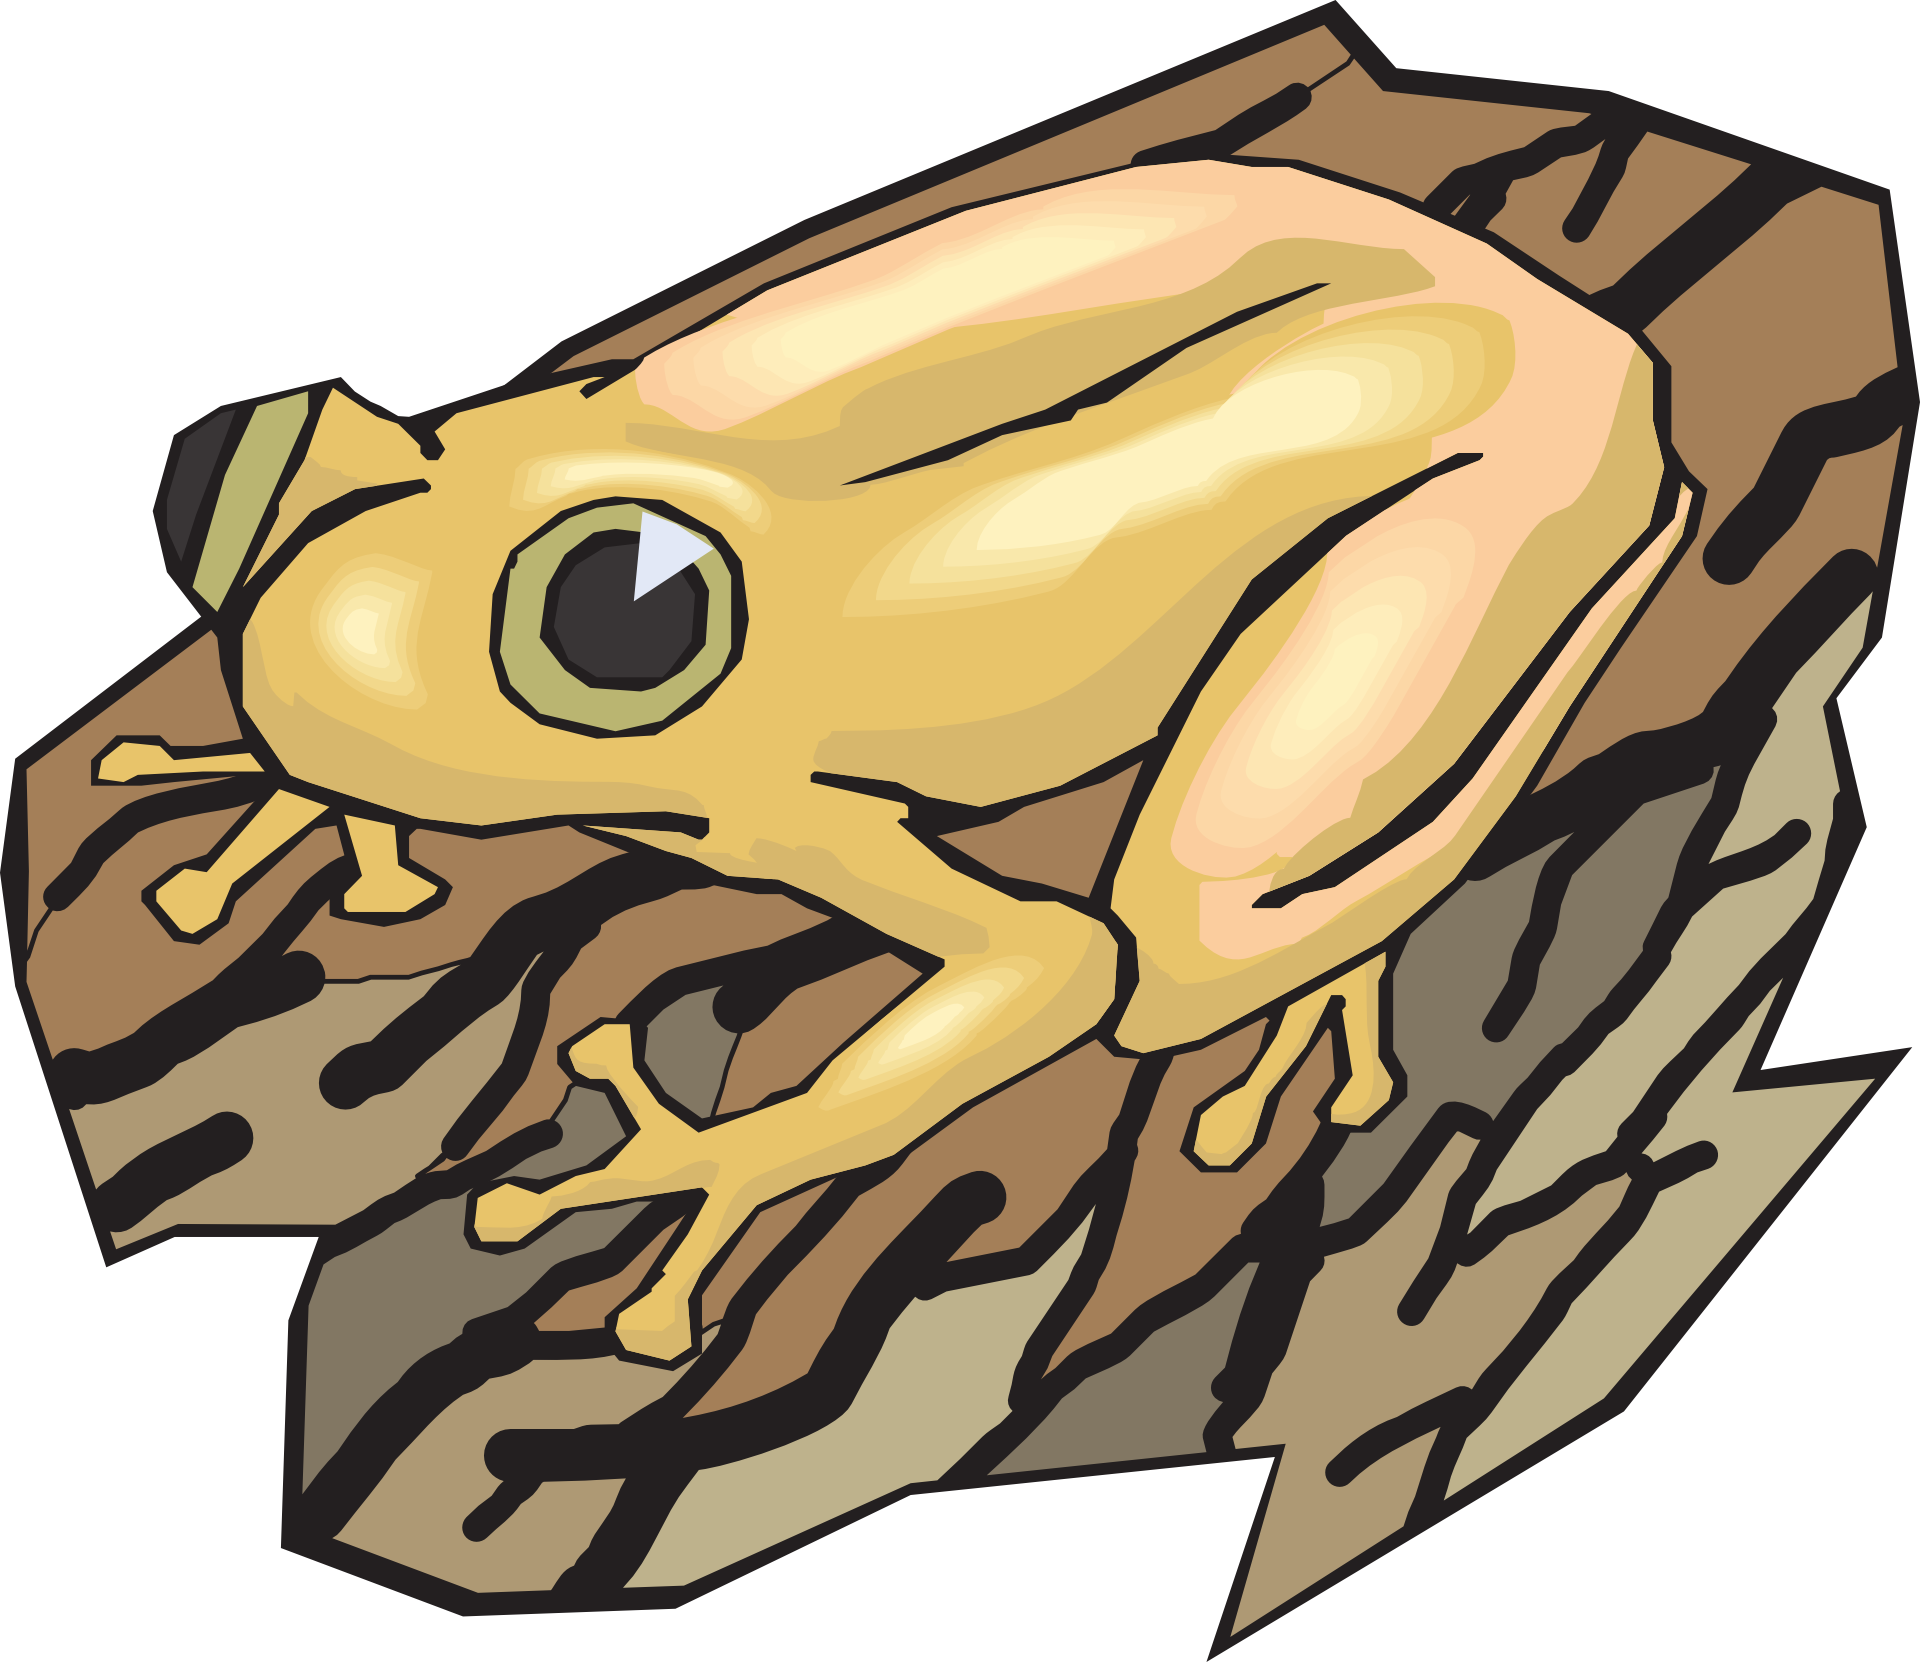 Frog drawed free image